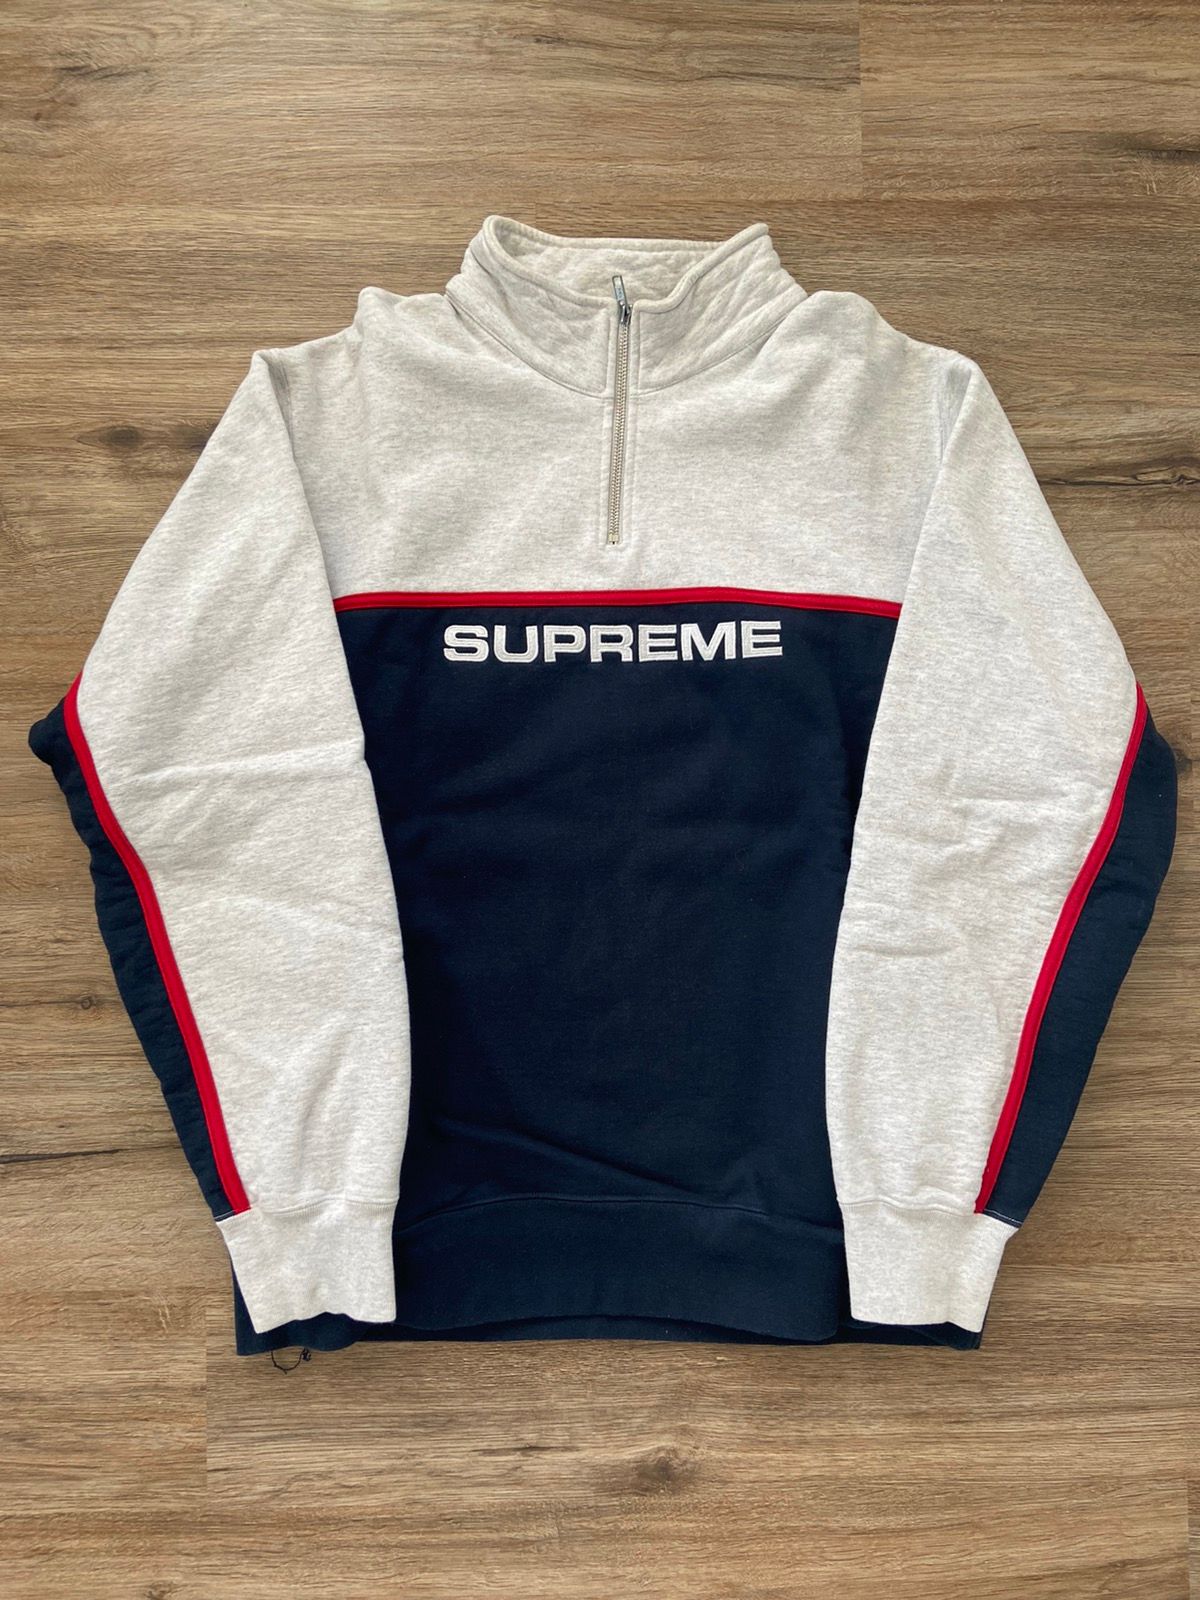 Supreme Supreme Half Zip Sweater | Grailed